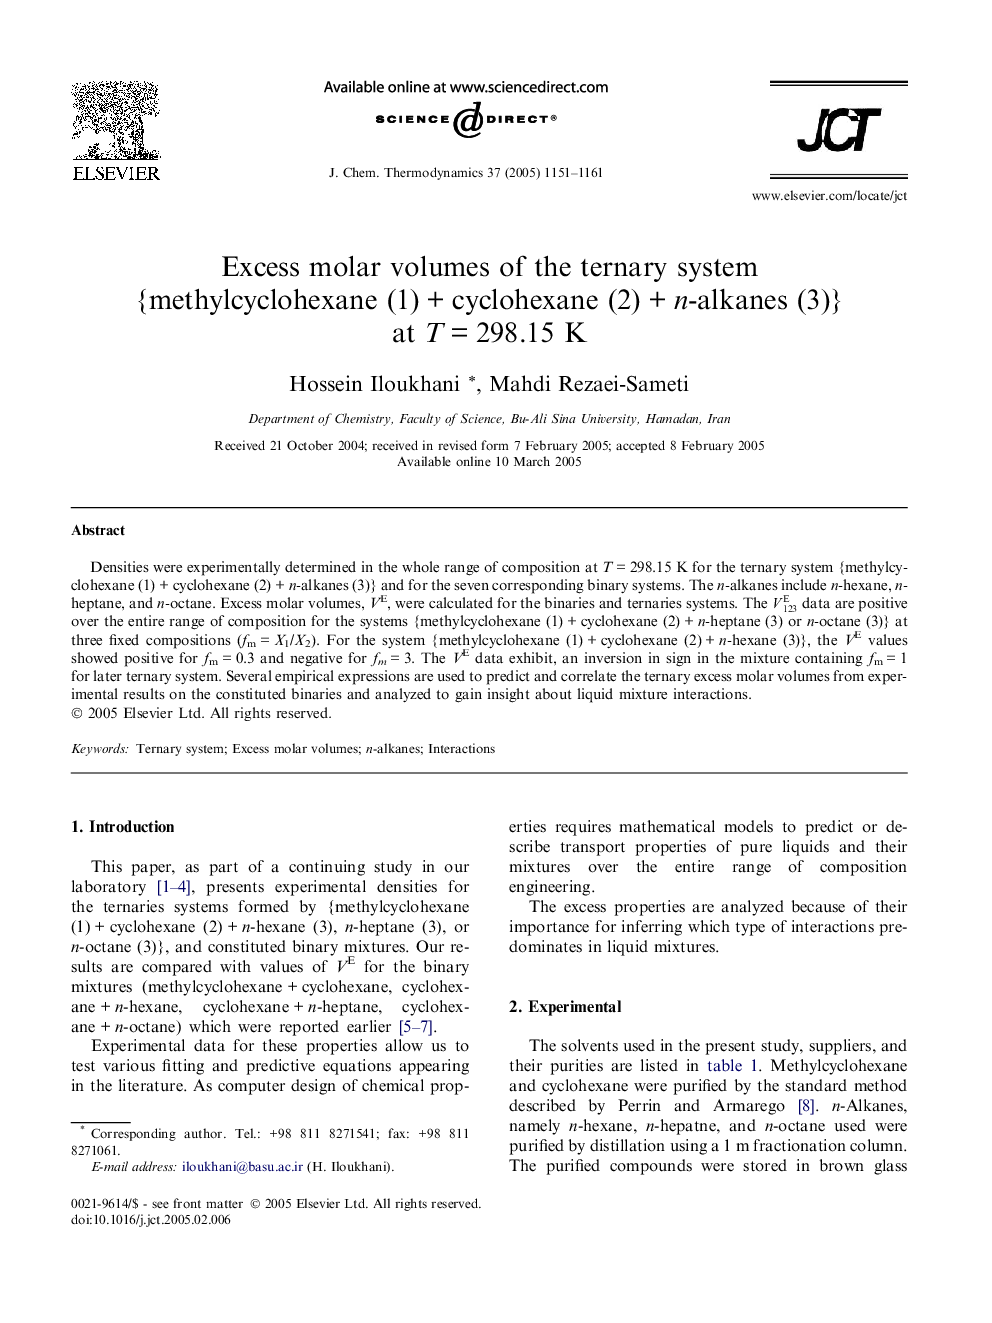 Excess molar volumes of the ternary system {methylcyclohexane (1)Â +Â cyclohexane (2)Â +Â n-alkanes (3)} at TÂ =Â 298.15 K